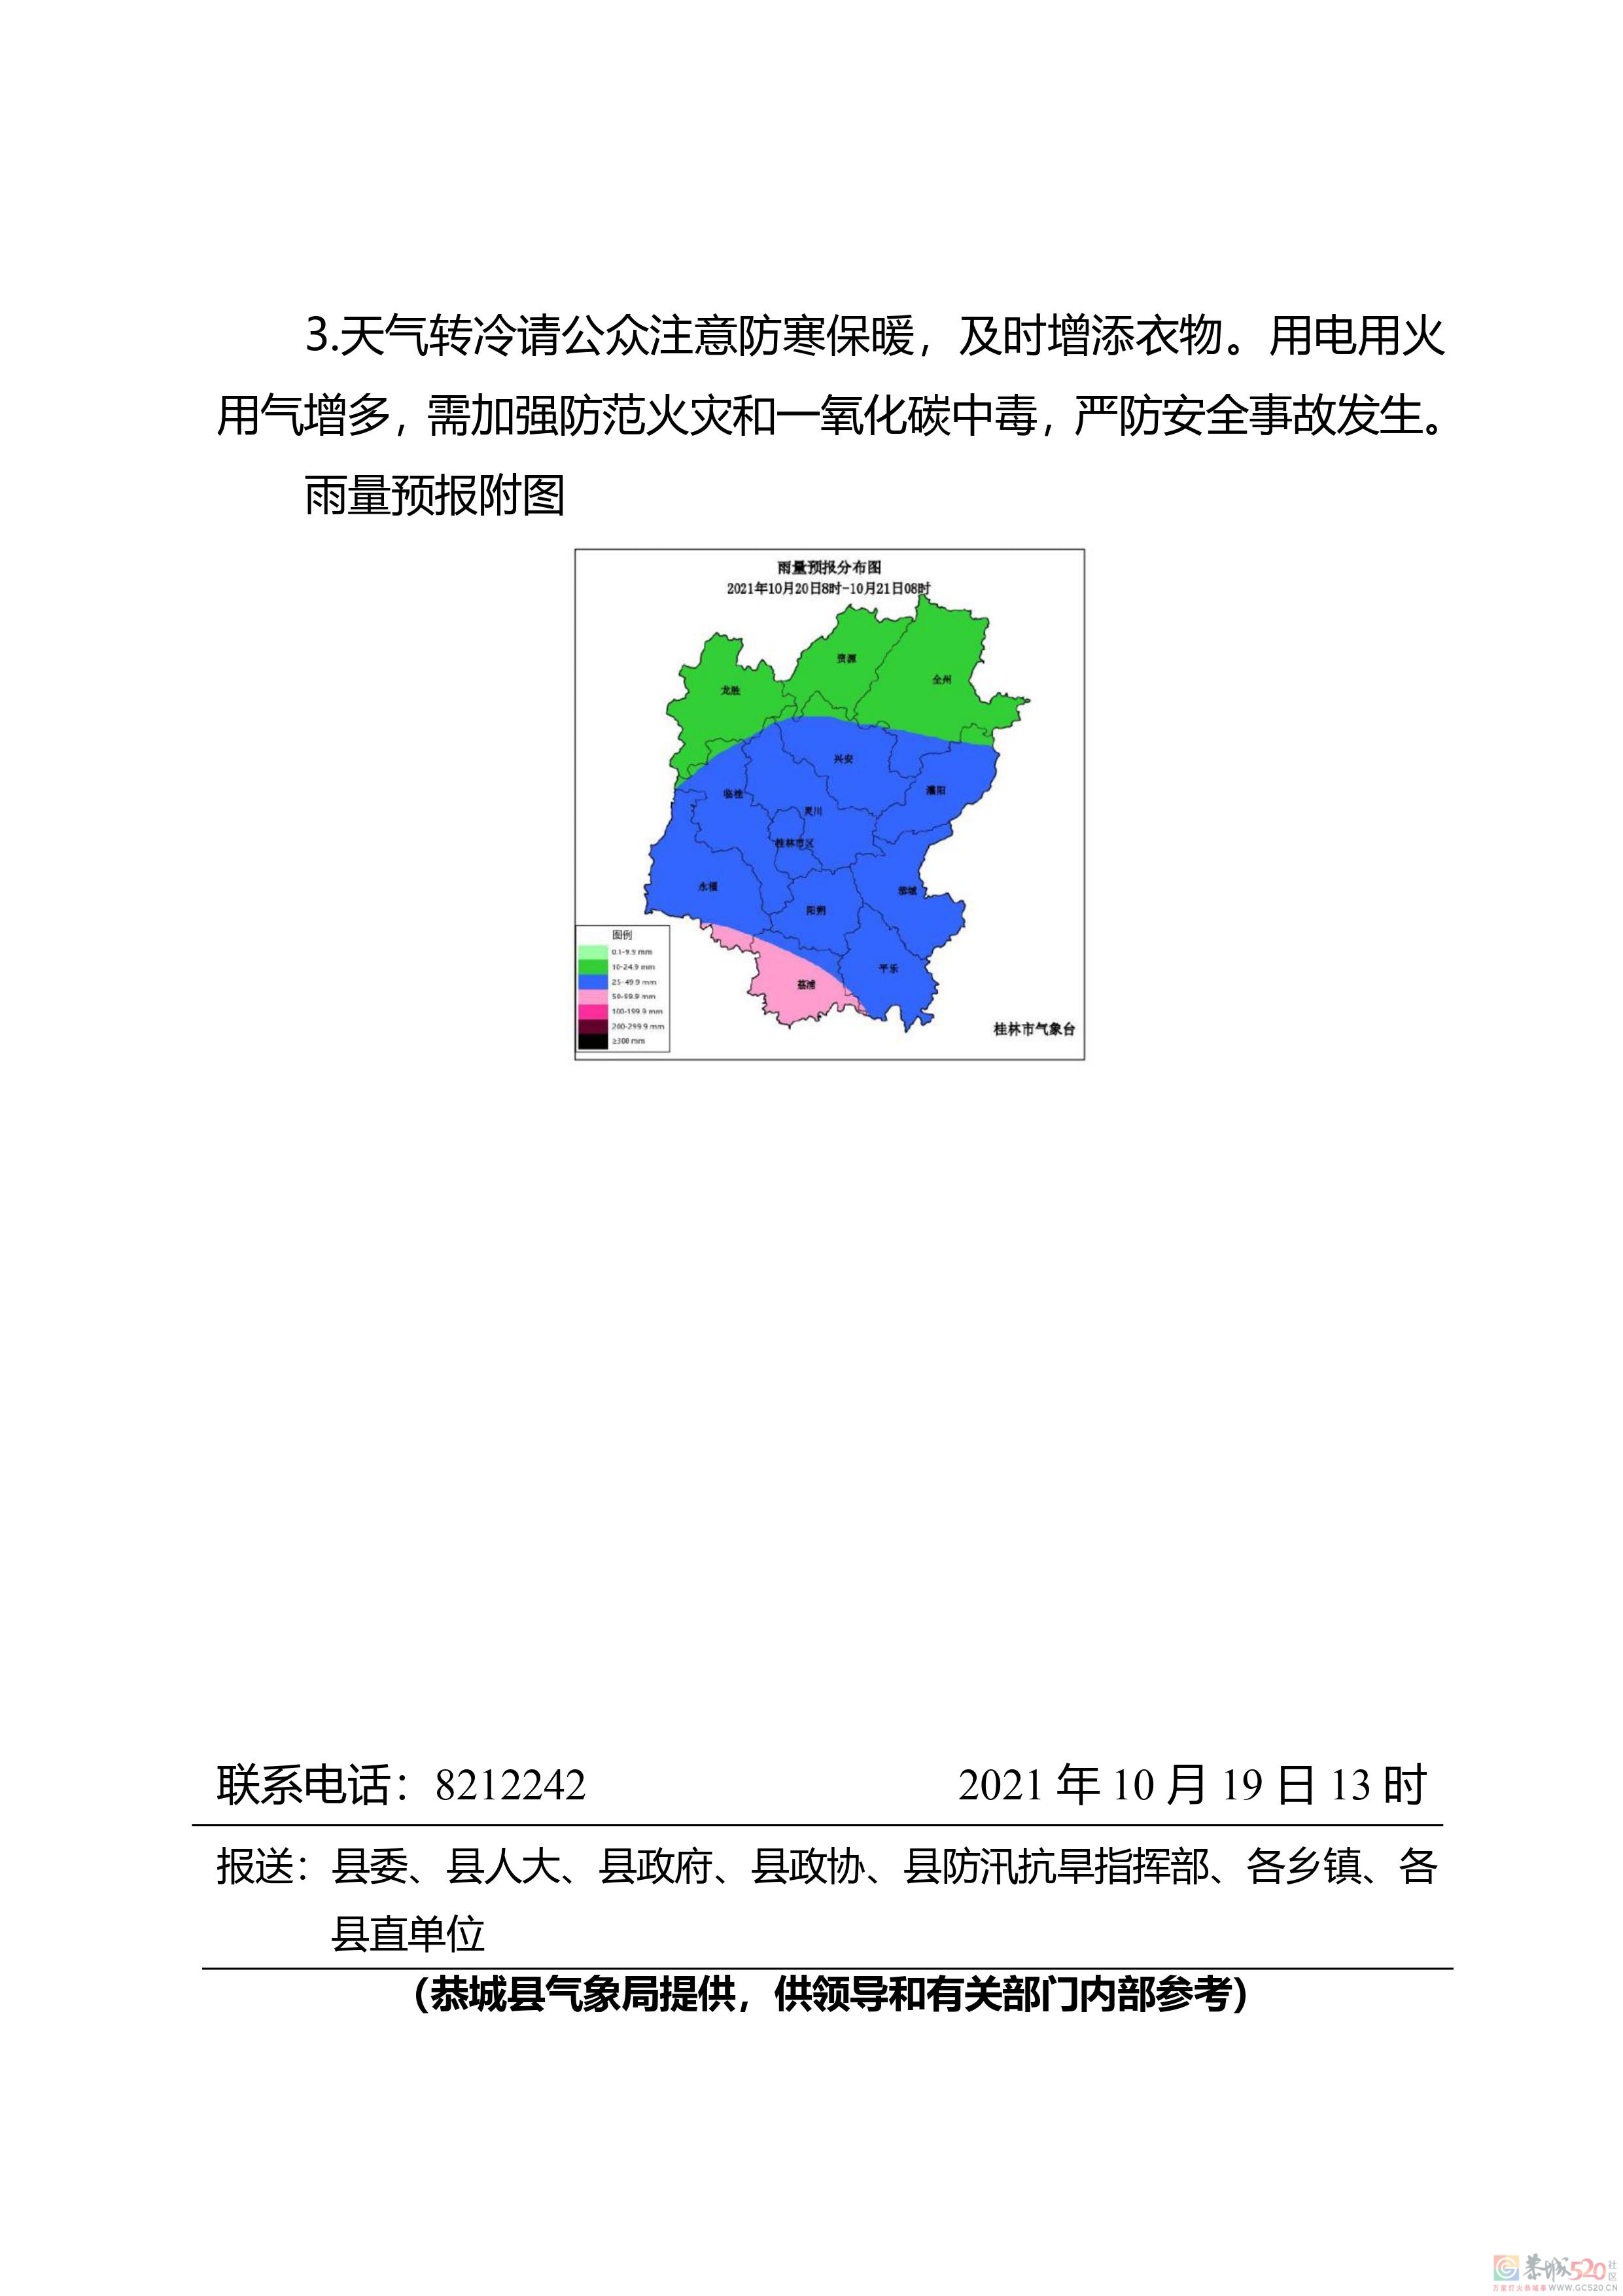 10月20-21日我县有一次较明显降雨和降温天气过程587 / 作者:论坛小编01 / 帖子ID:289835